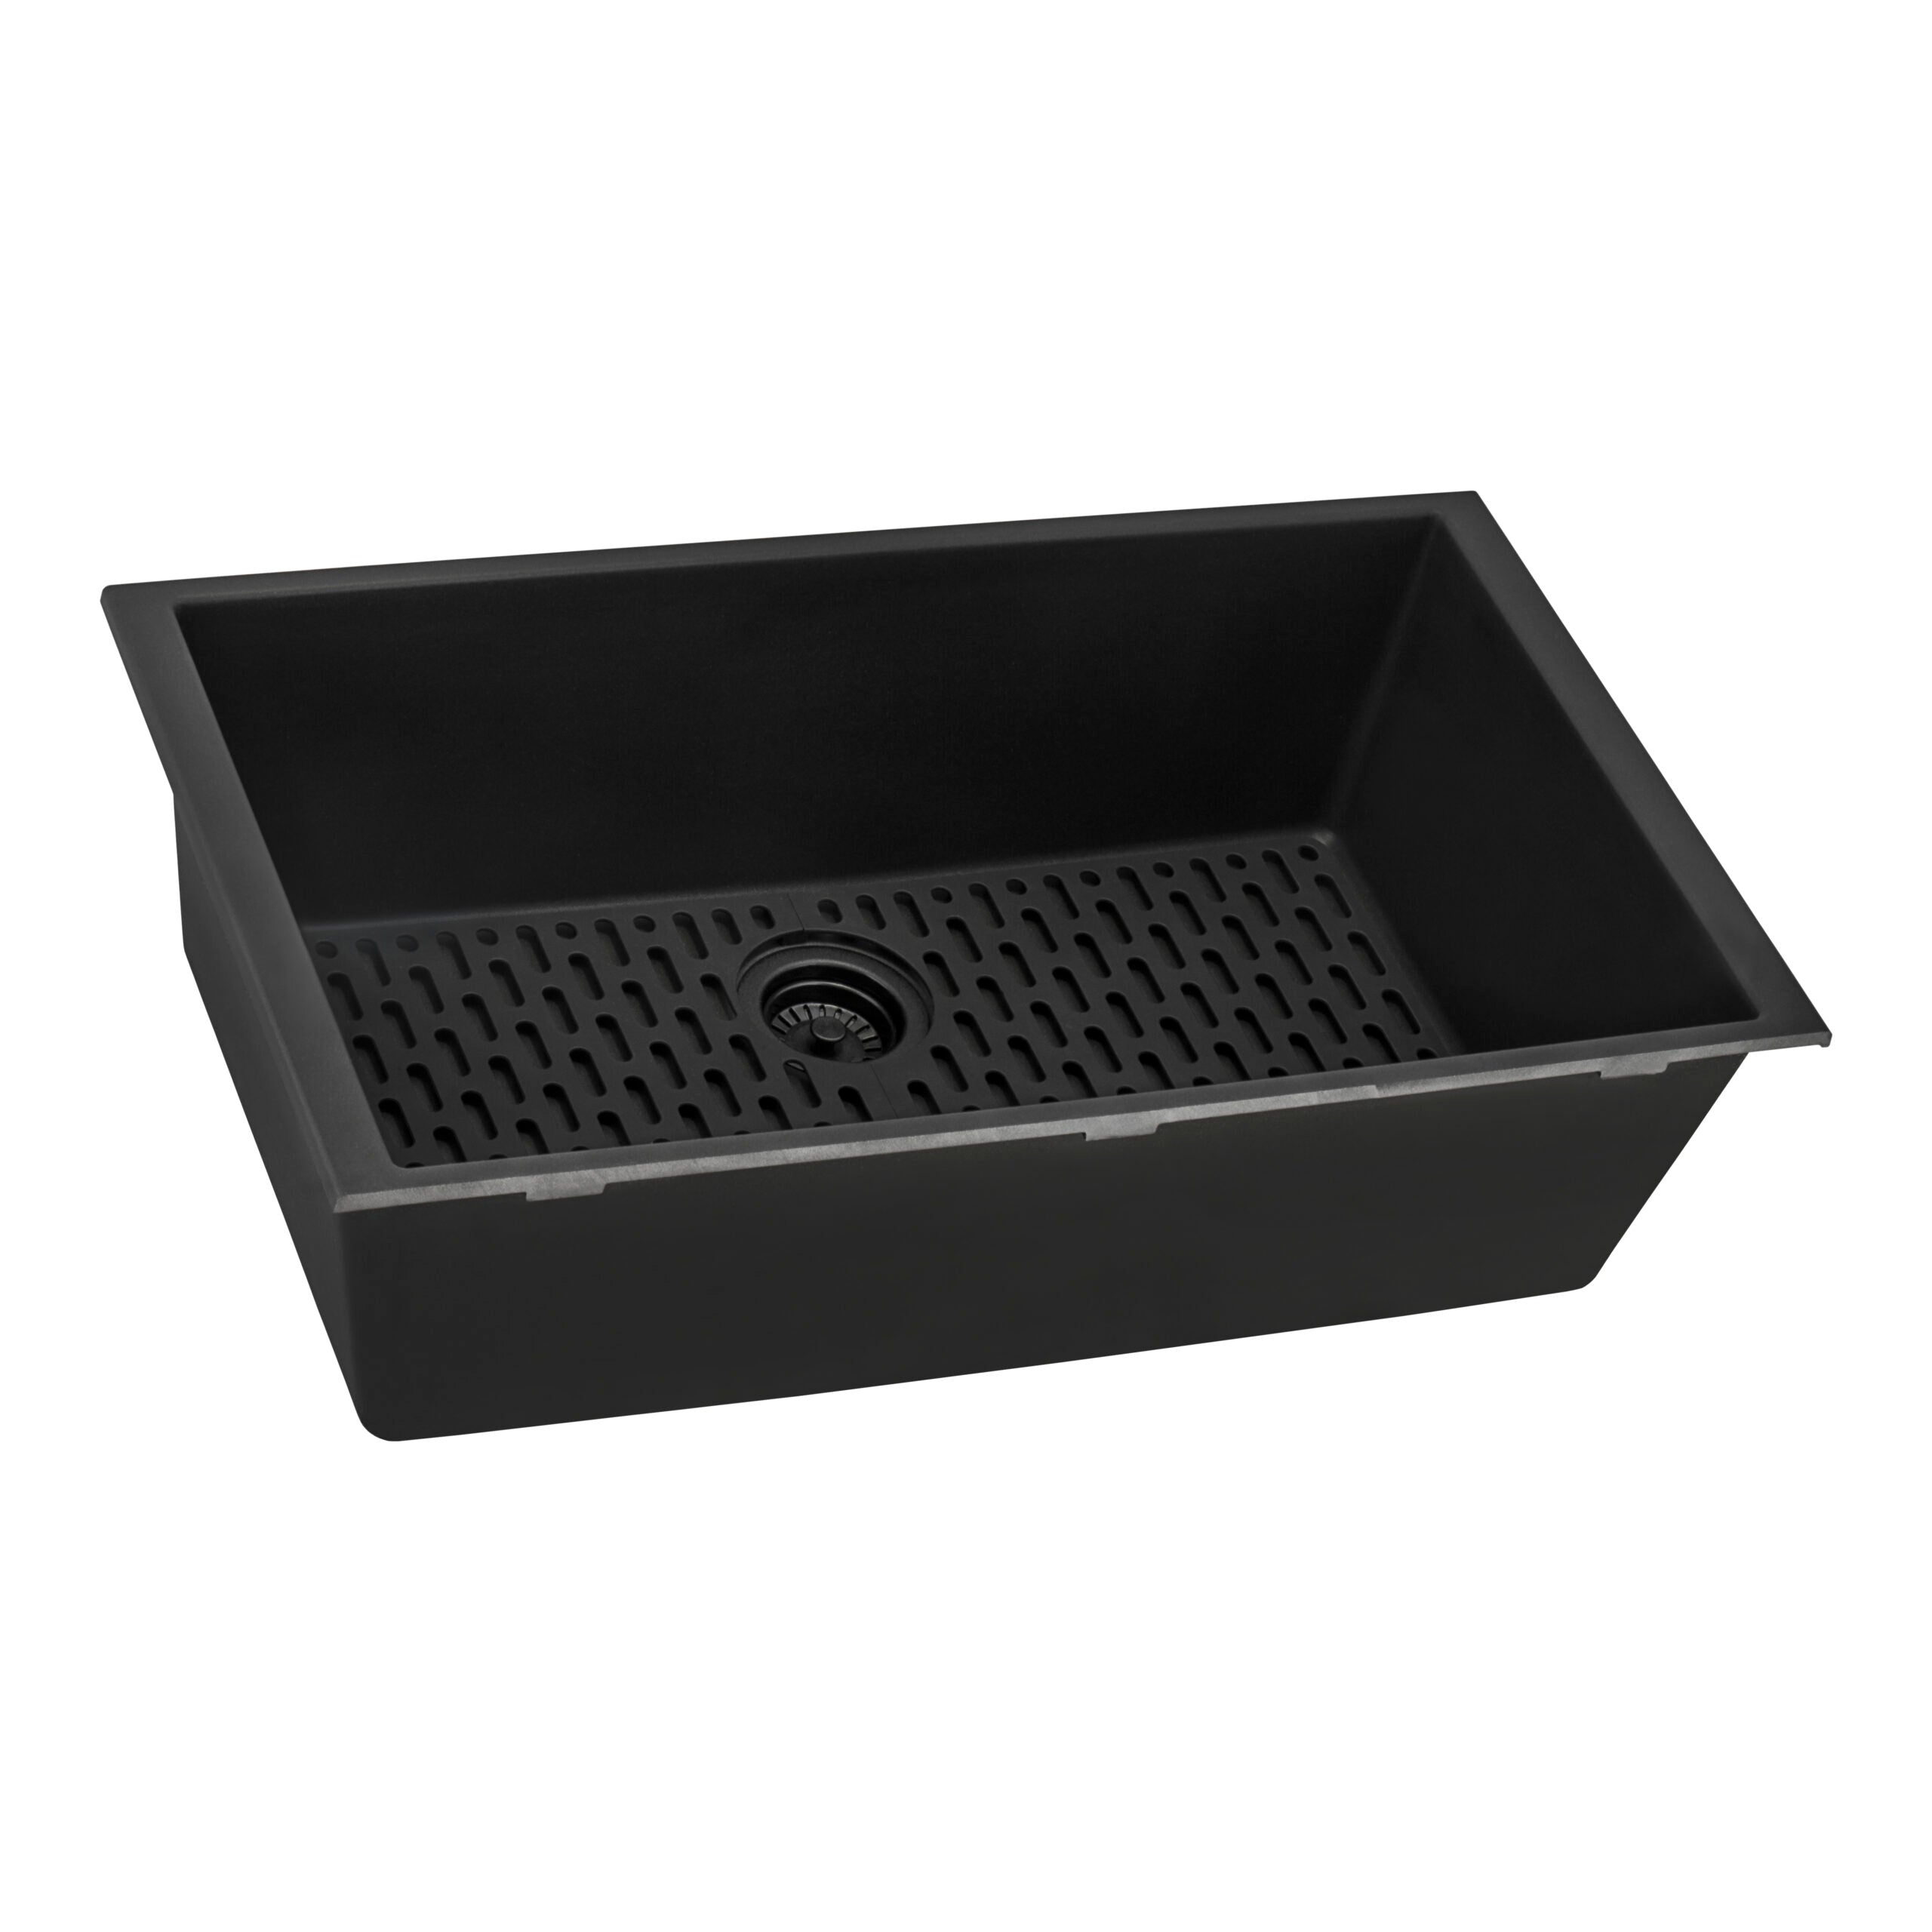 33 x 19 inch Granite Composite Undermount Single Bowl Kitchen Sink – Midnight Black